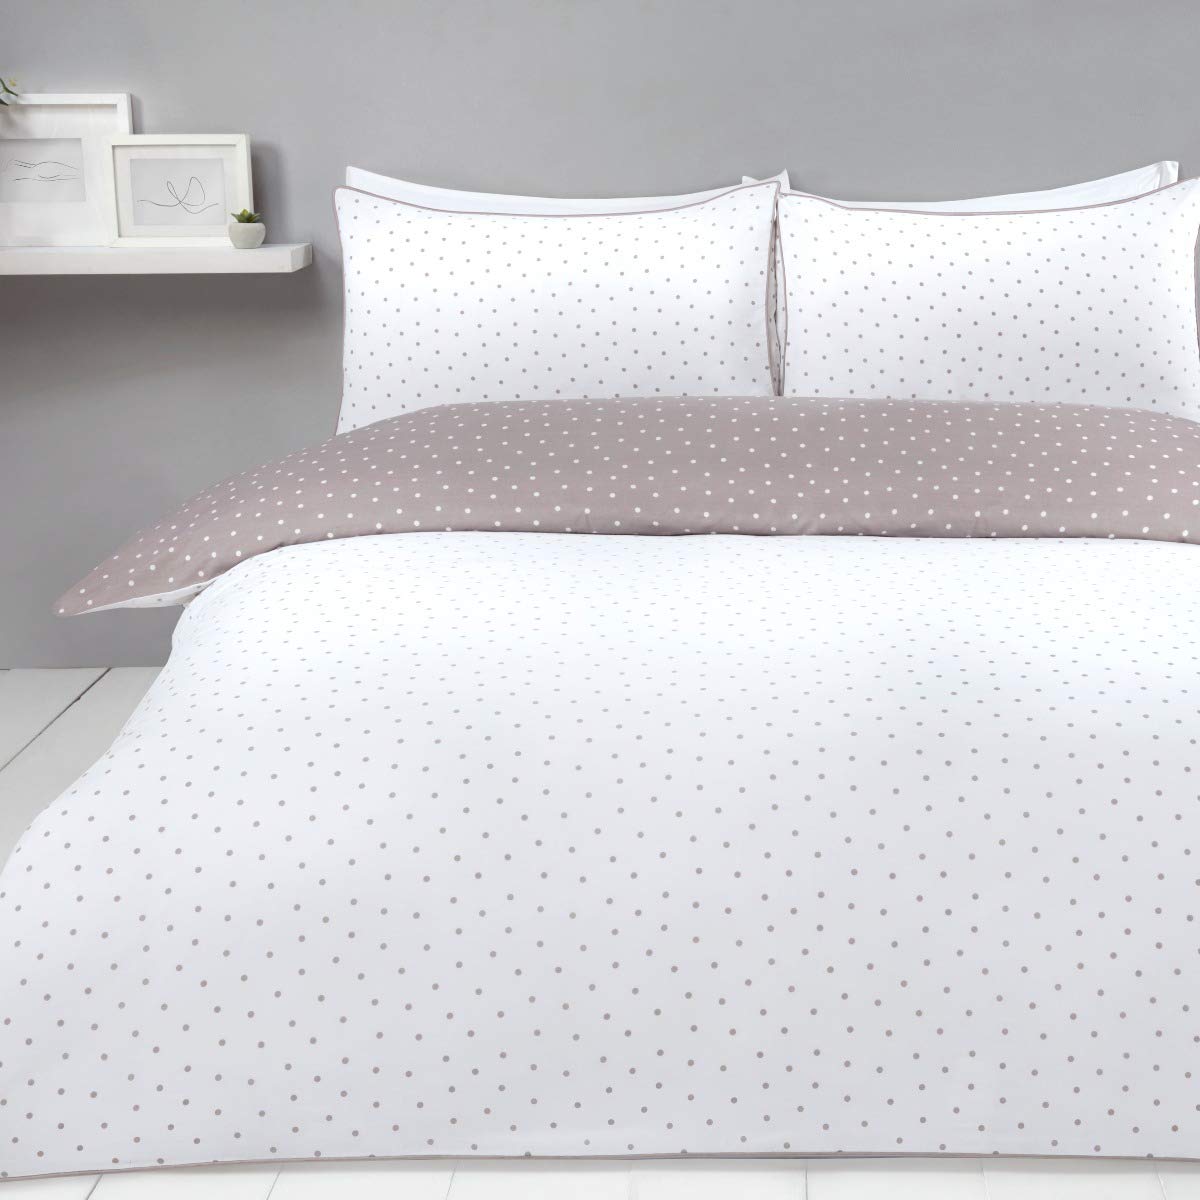 Mini Polka Dots - Reversible Duvet Cover and Pillowcase Set